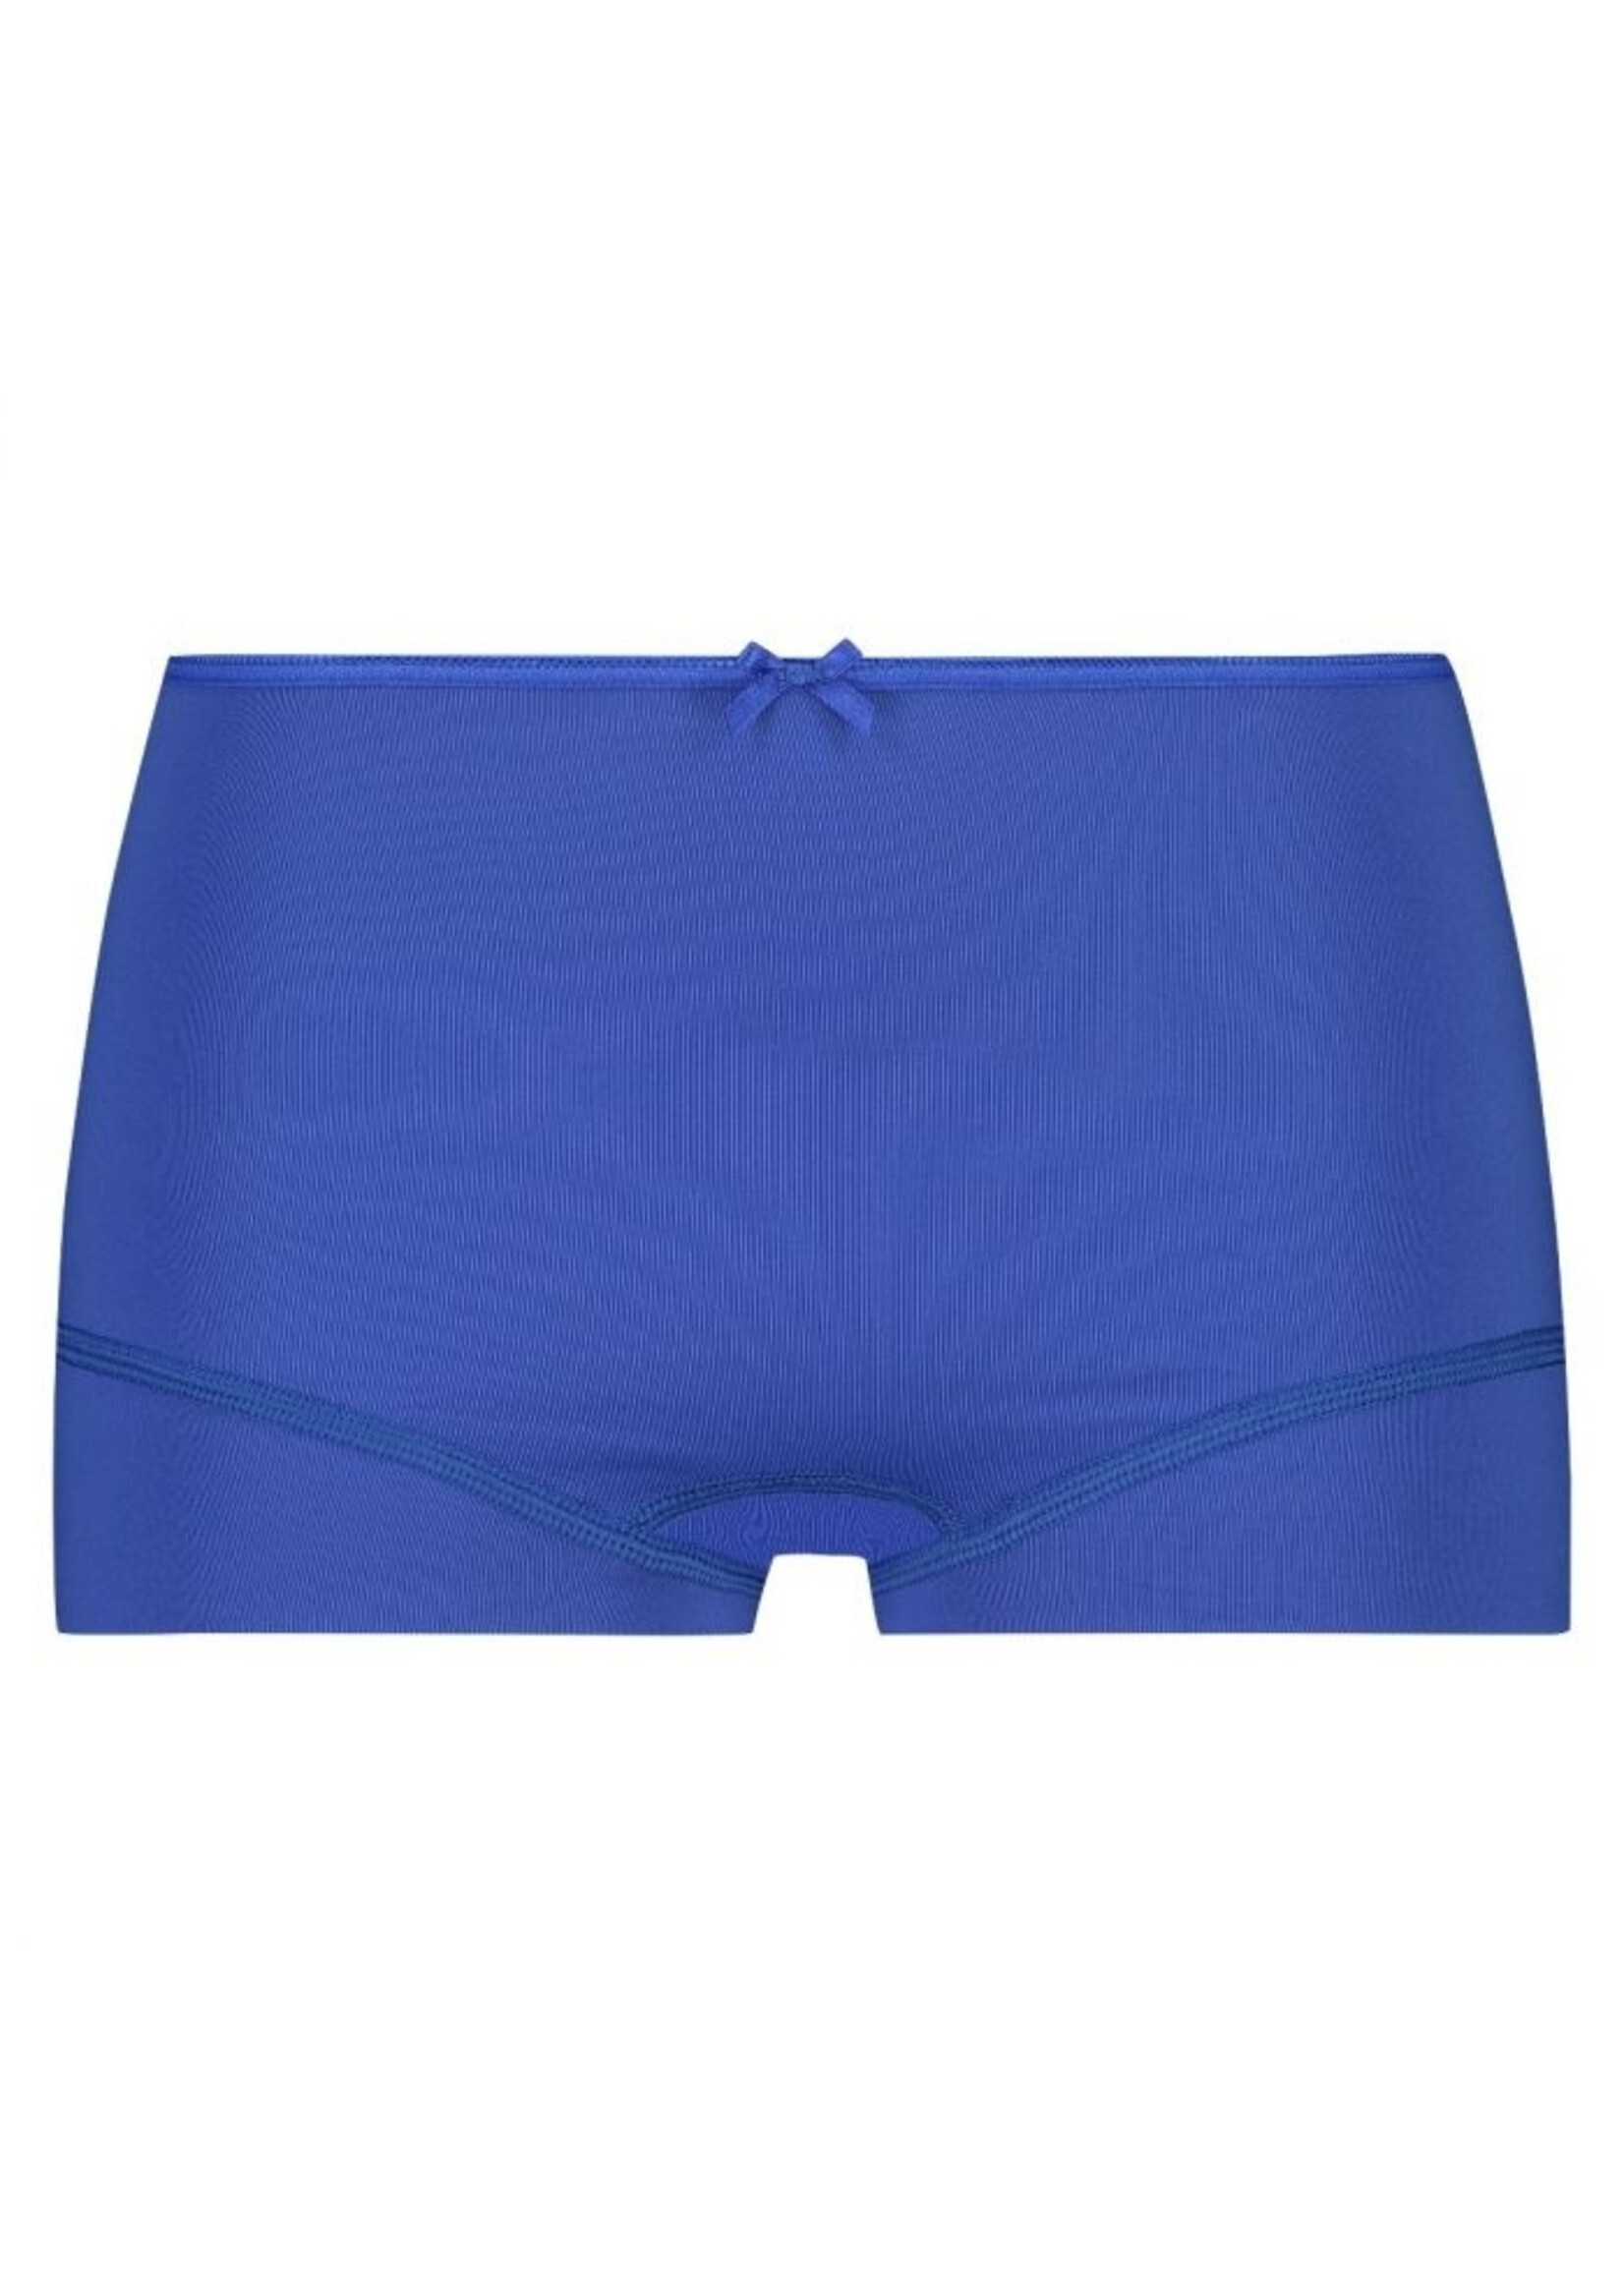 RJ underwear Short blauw